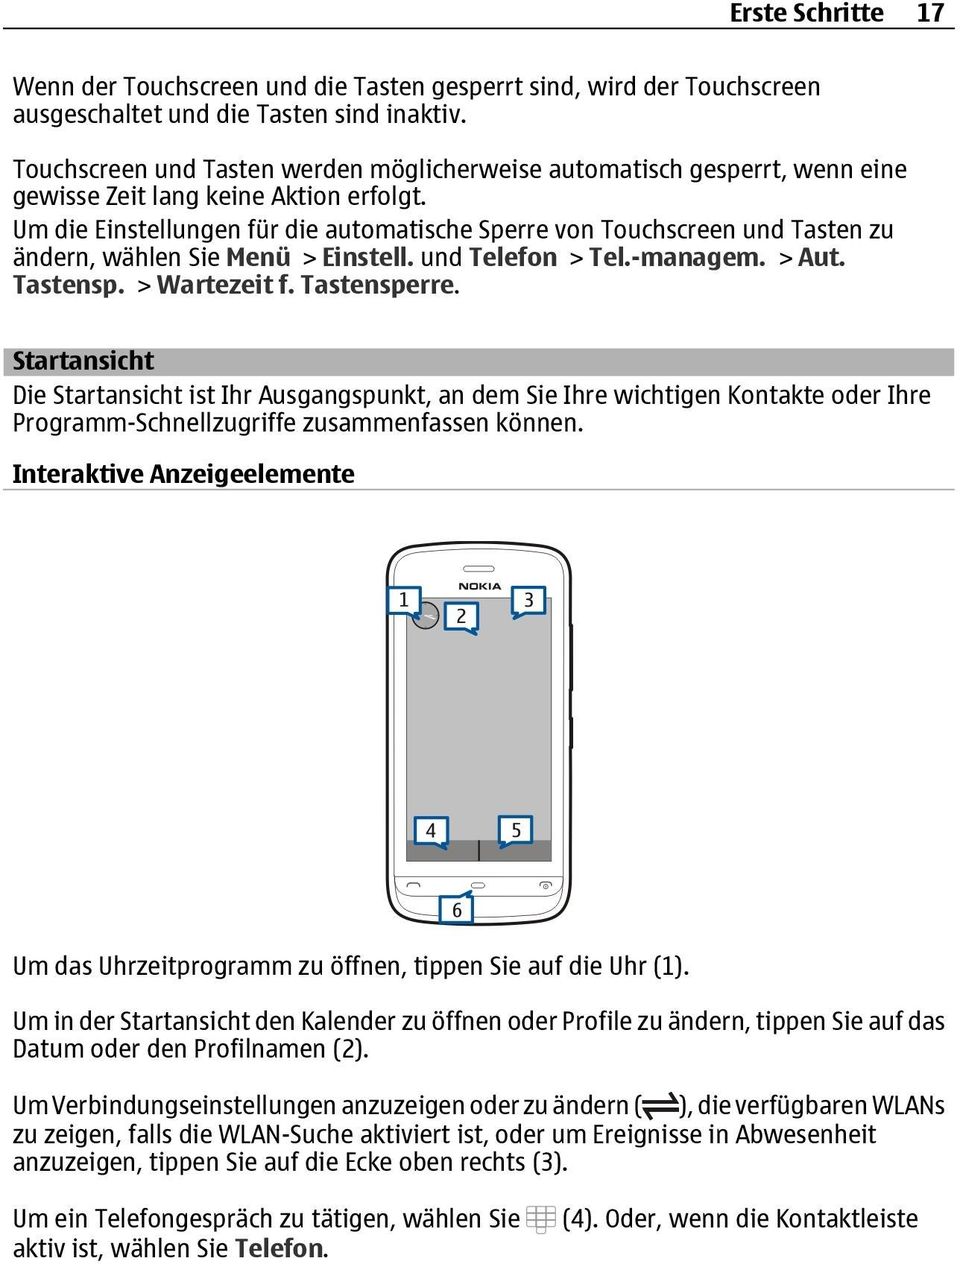 Um die Einstellungen für die automatische Sperre von Touchscreen und Tasten zu ändern, wählen Sie Menü > Einstell. und Telefon > Tel.-managem. > Aut. Tastensp. > Wartezeit f. Tastensperre.